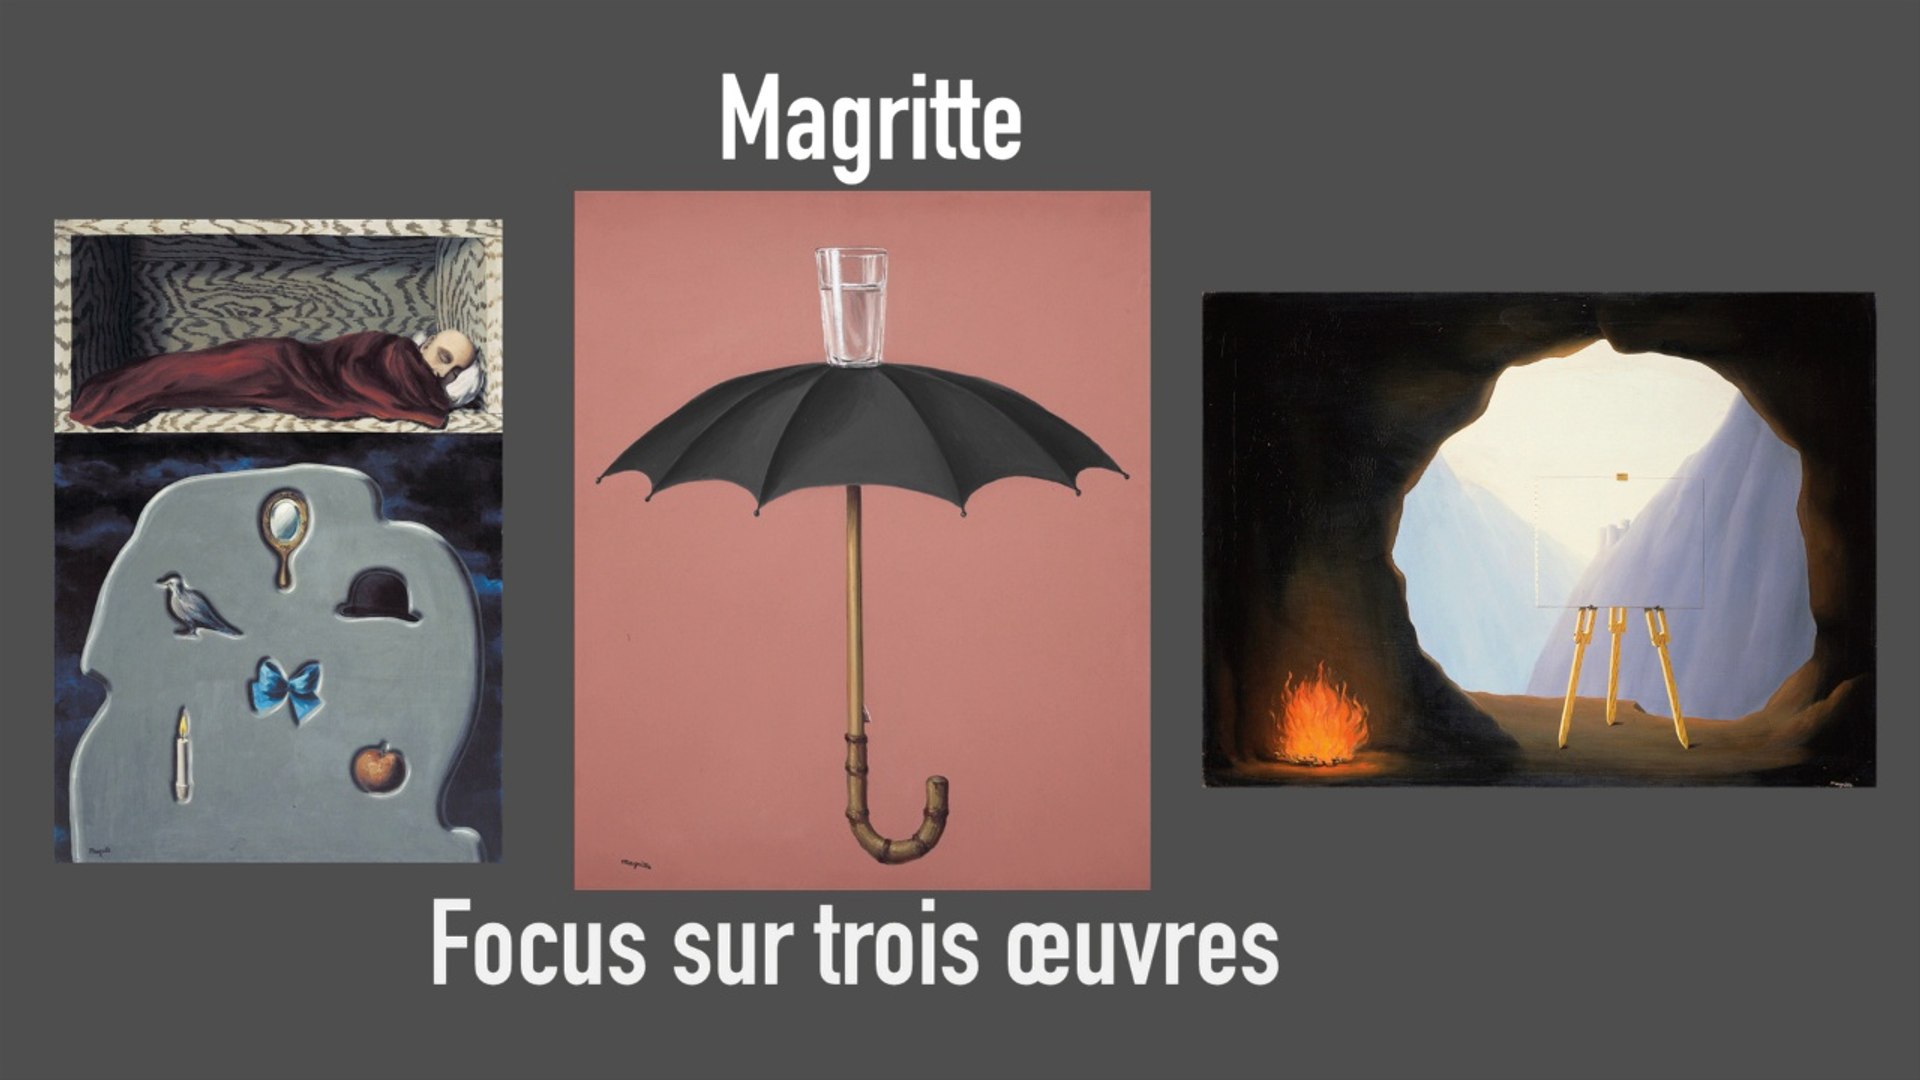 René Magritte, La trahison des images | Focus sur trois oeuvres |  Exposition - Vidéo Dailymotion